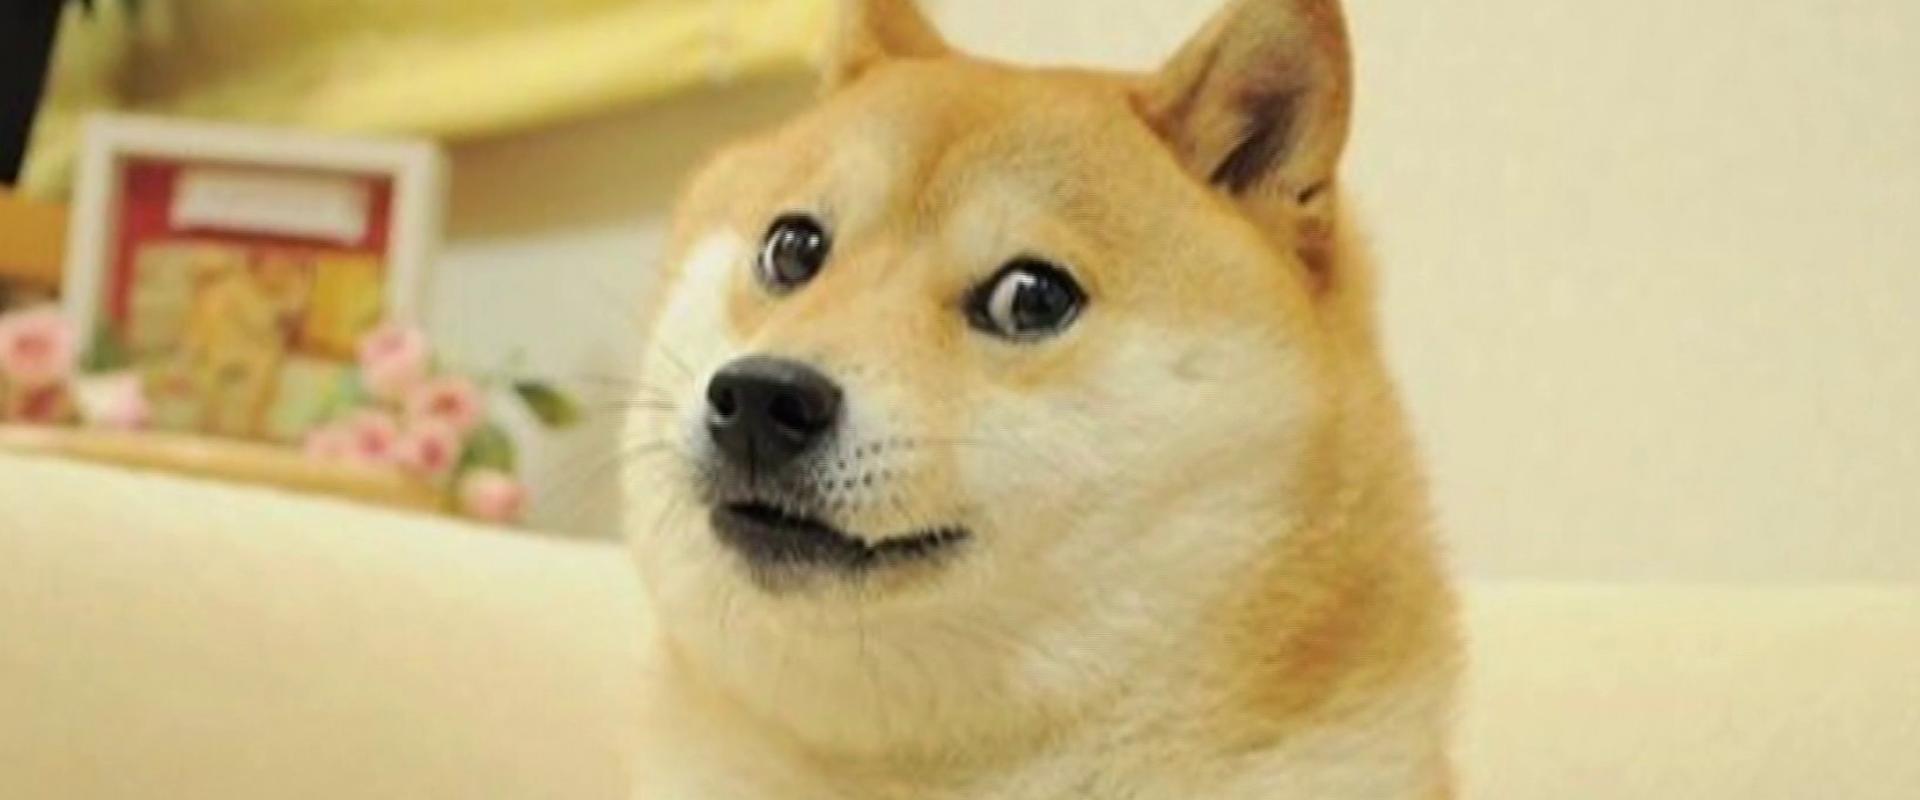 Elhunyt Kabosu, a doge memet ihlető kutya